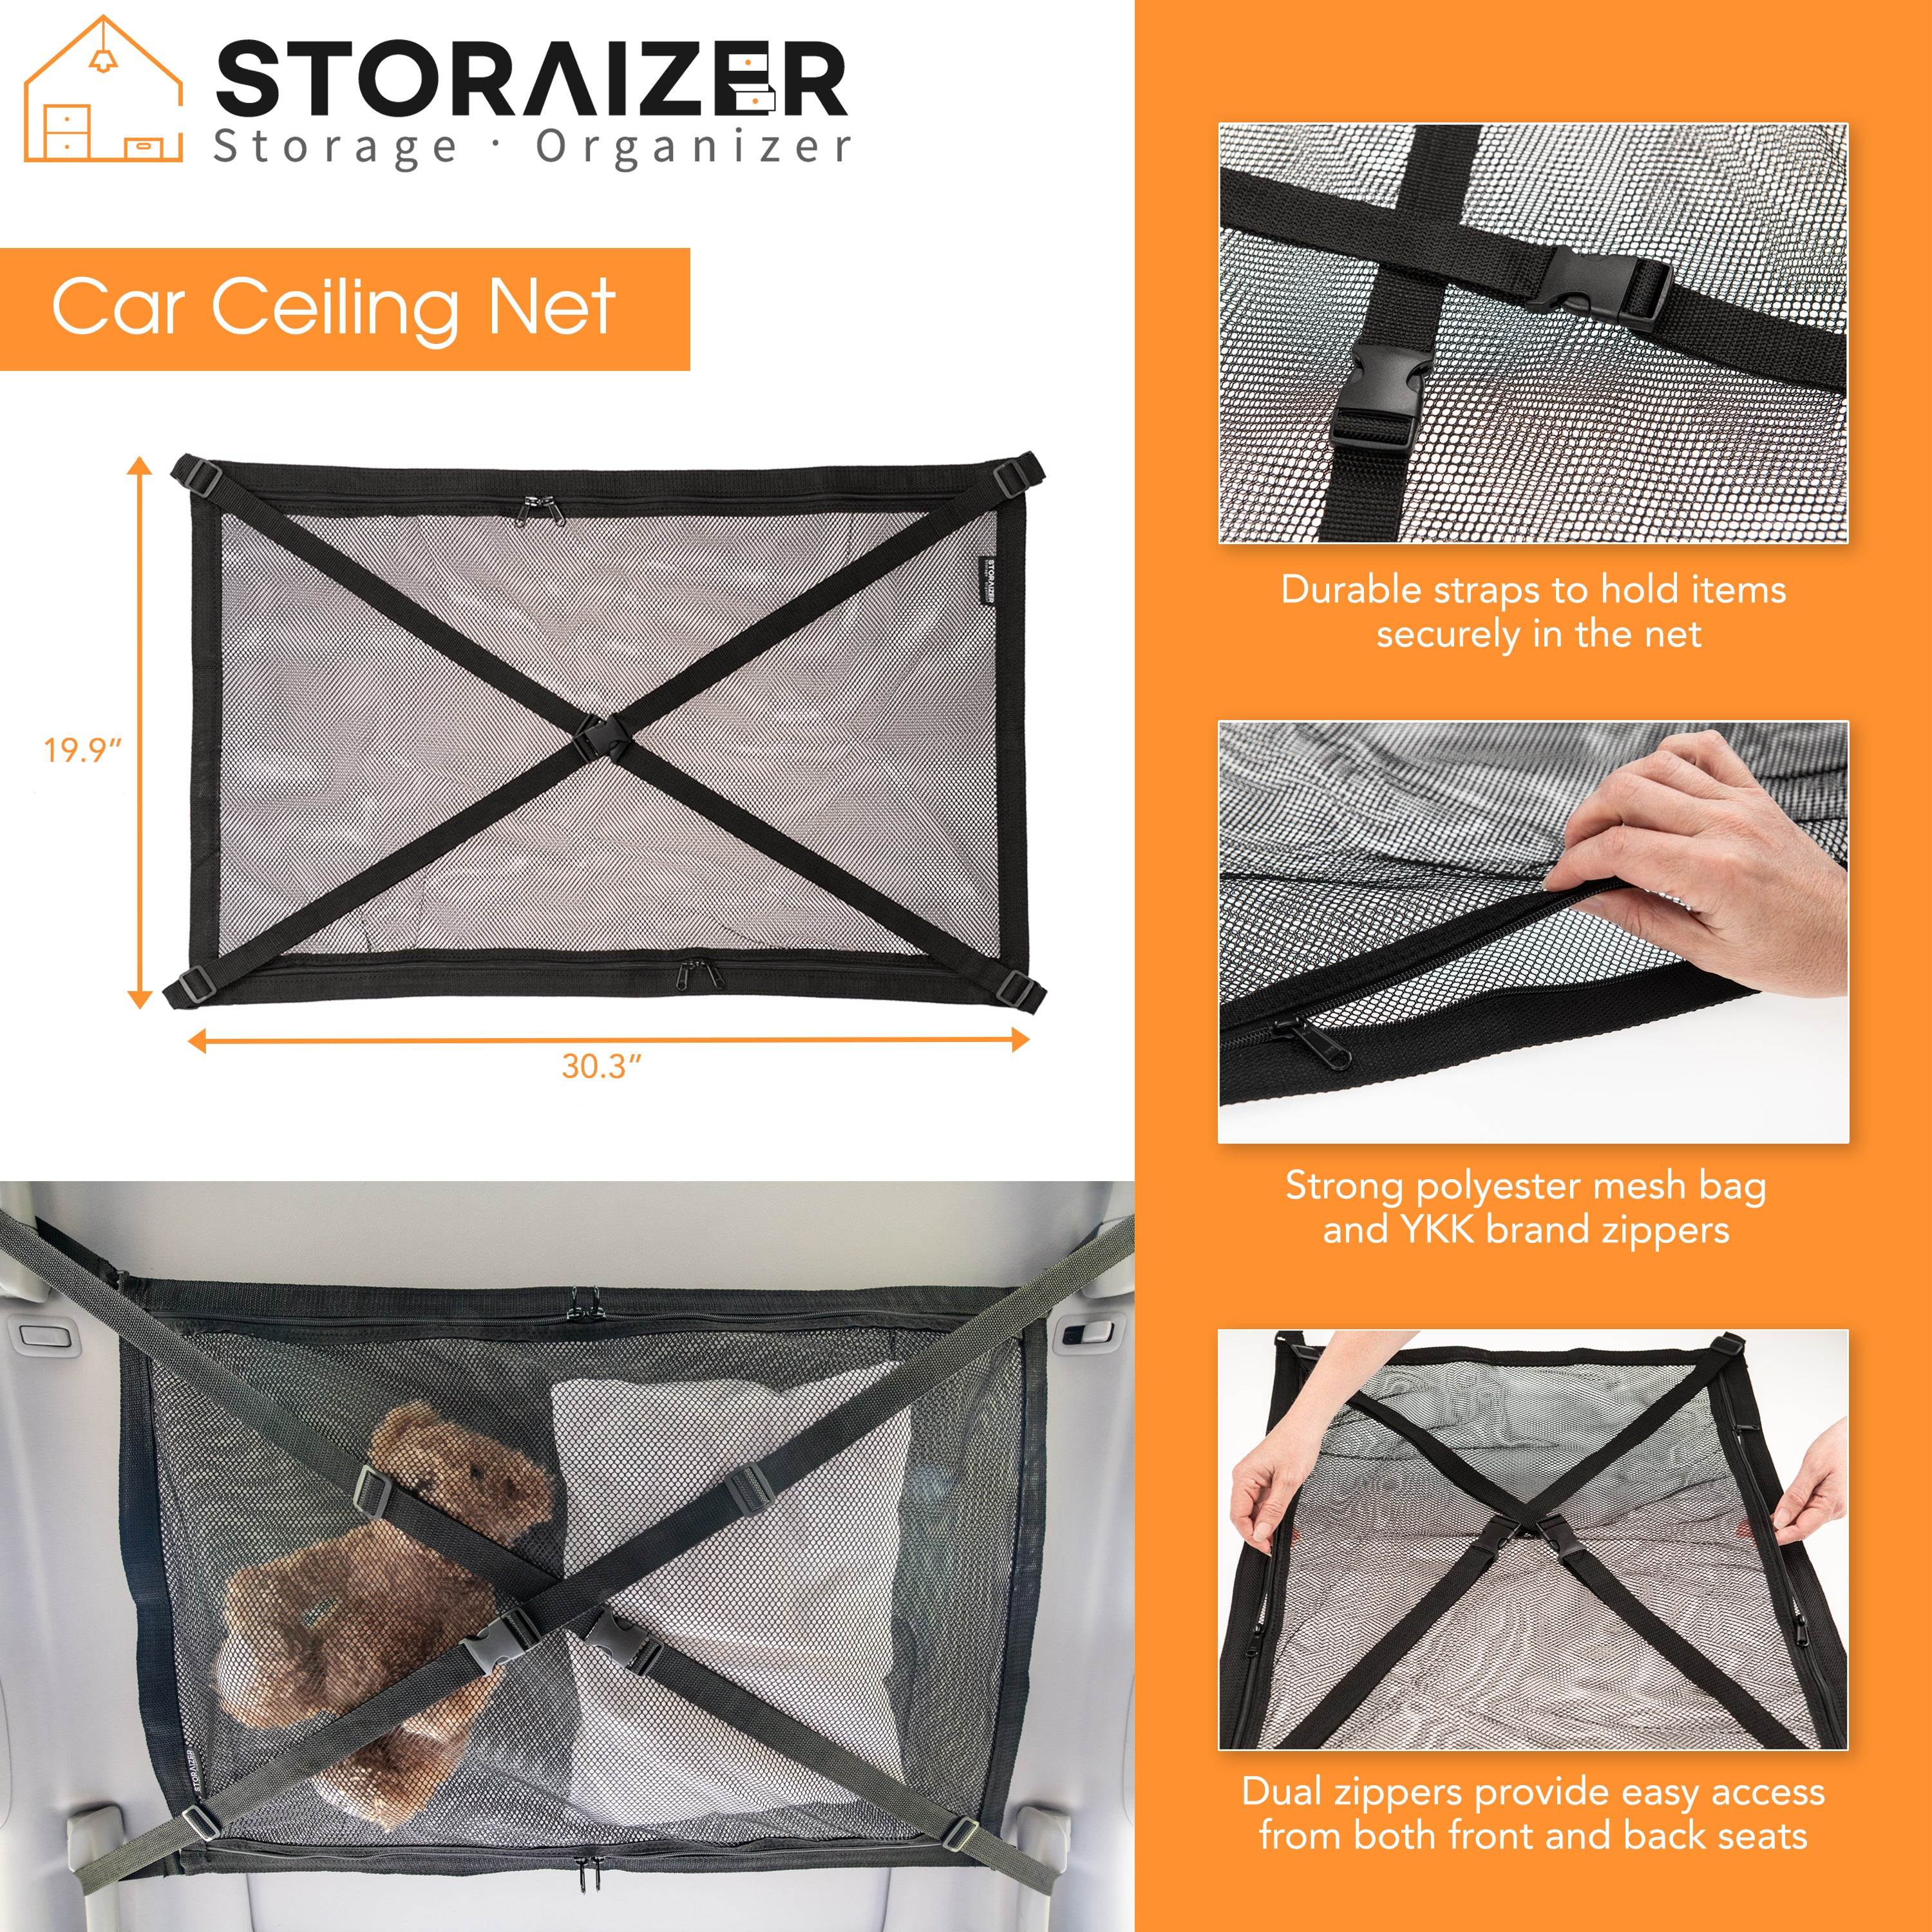 Storaizer Car Ceiling Net